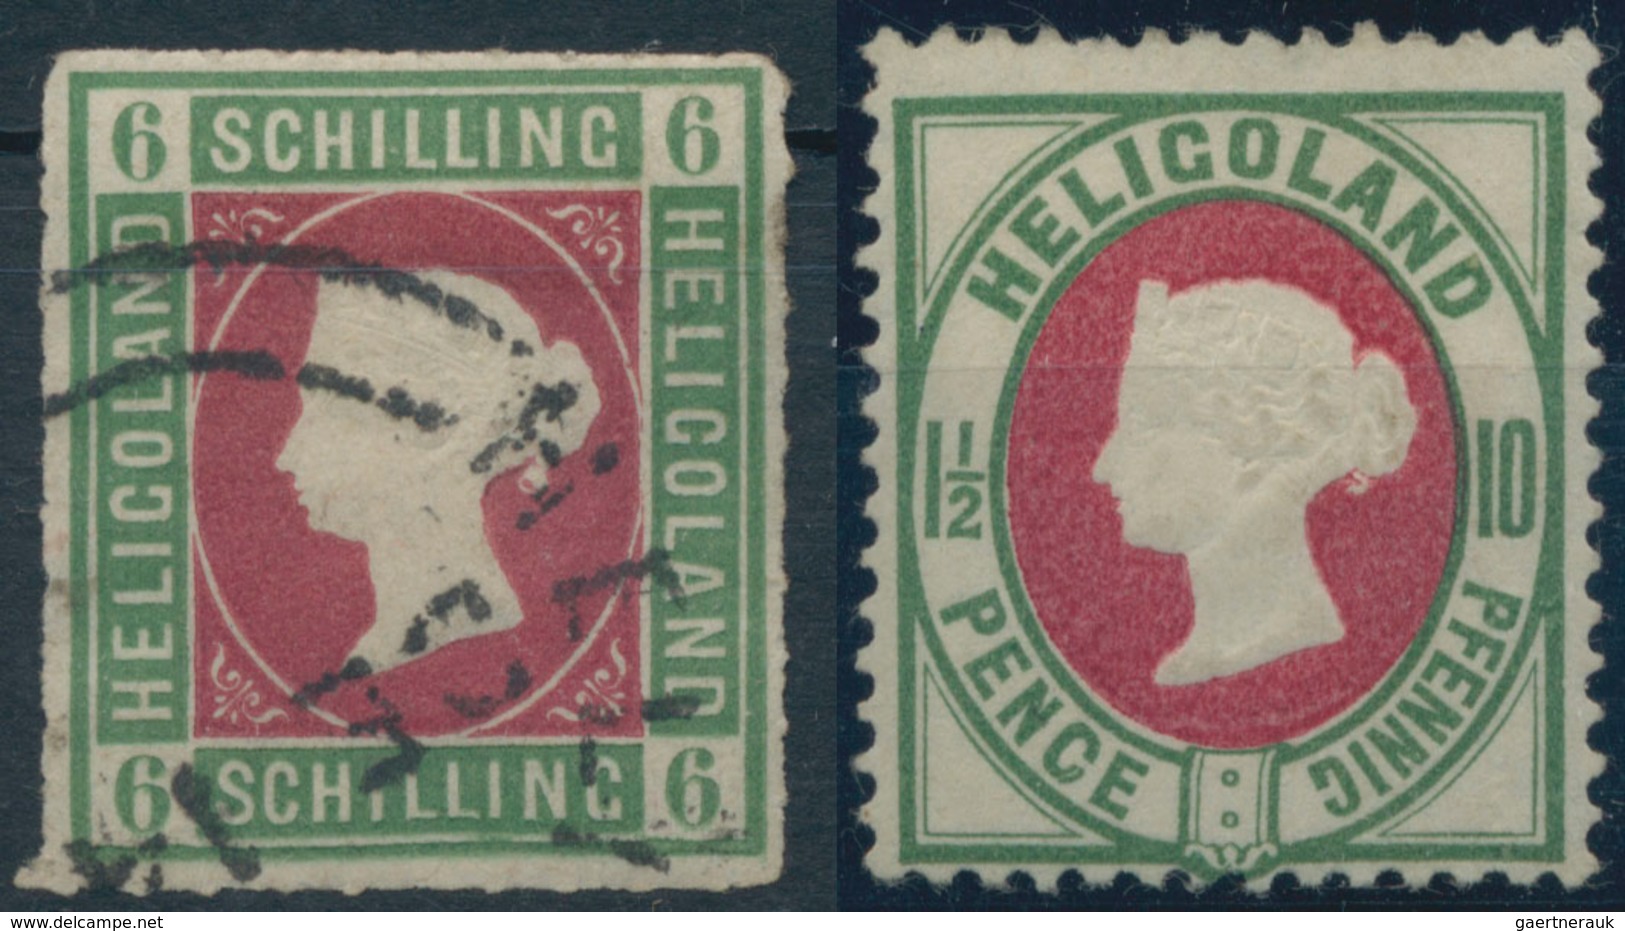 Helgoland - Marken Und Briefe: 1867/1879, Sammlungsbestand Von 45 Marken Auf Albenblatt Und Auf Stec - Helgoland